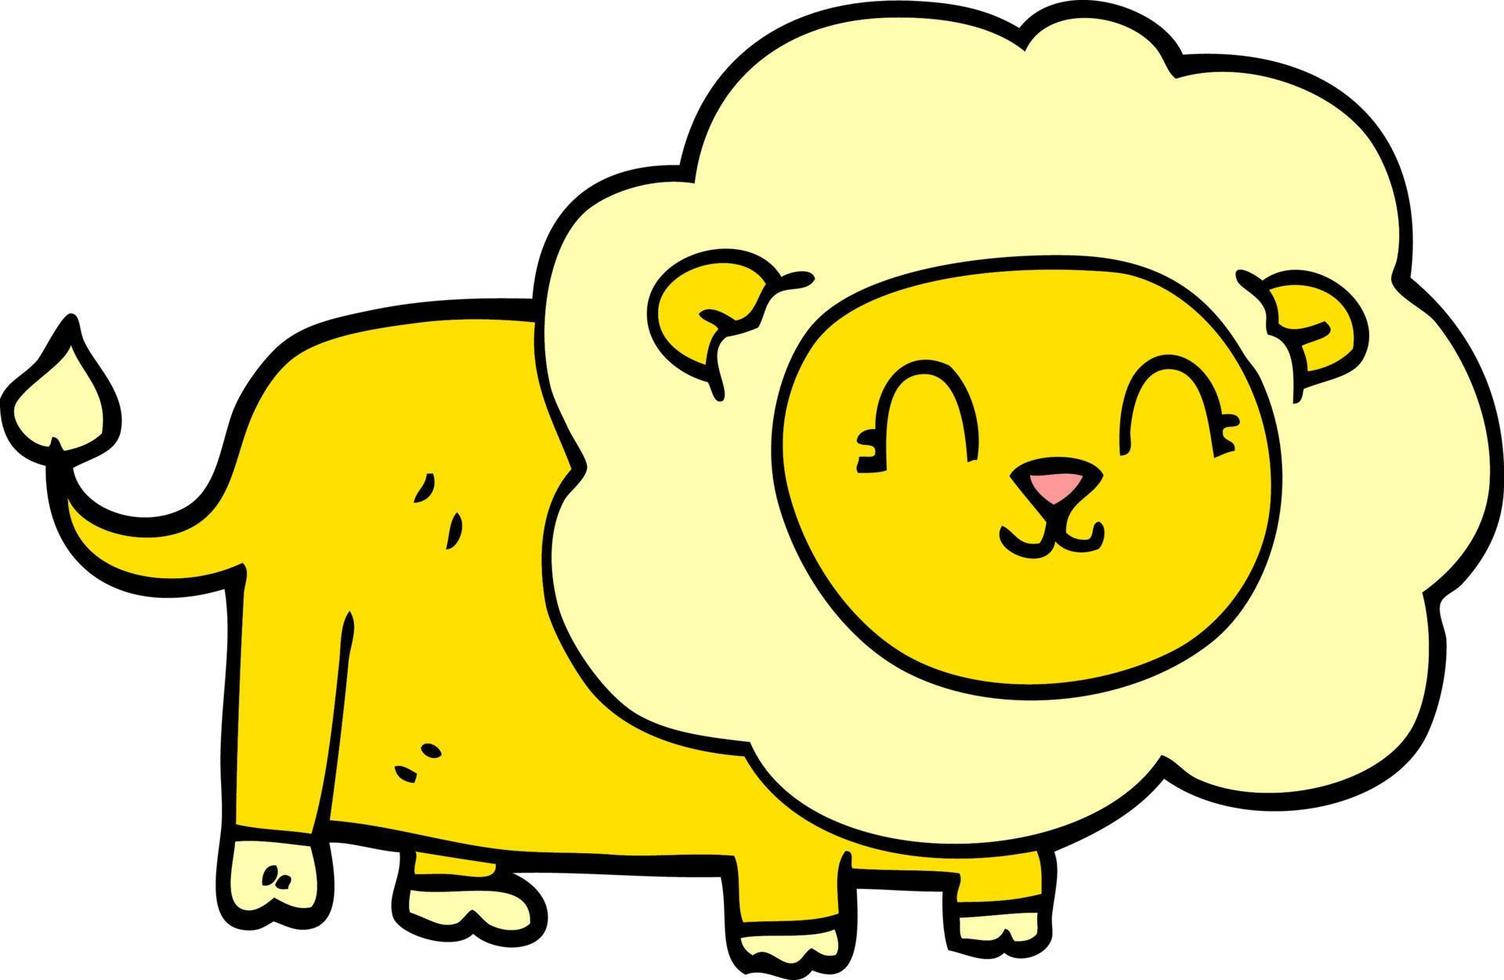 cartoon doodle happy lion vector